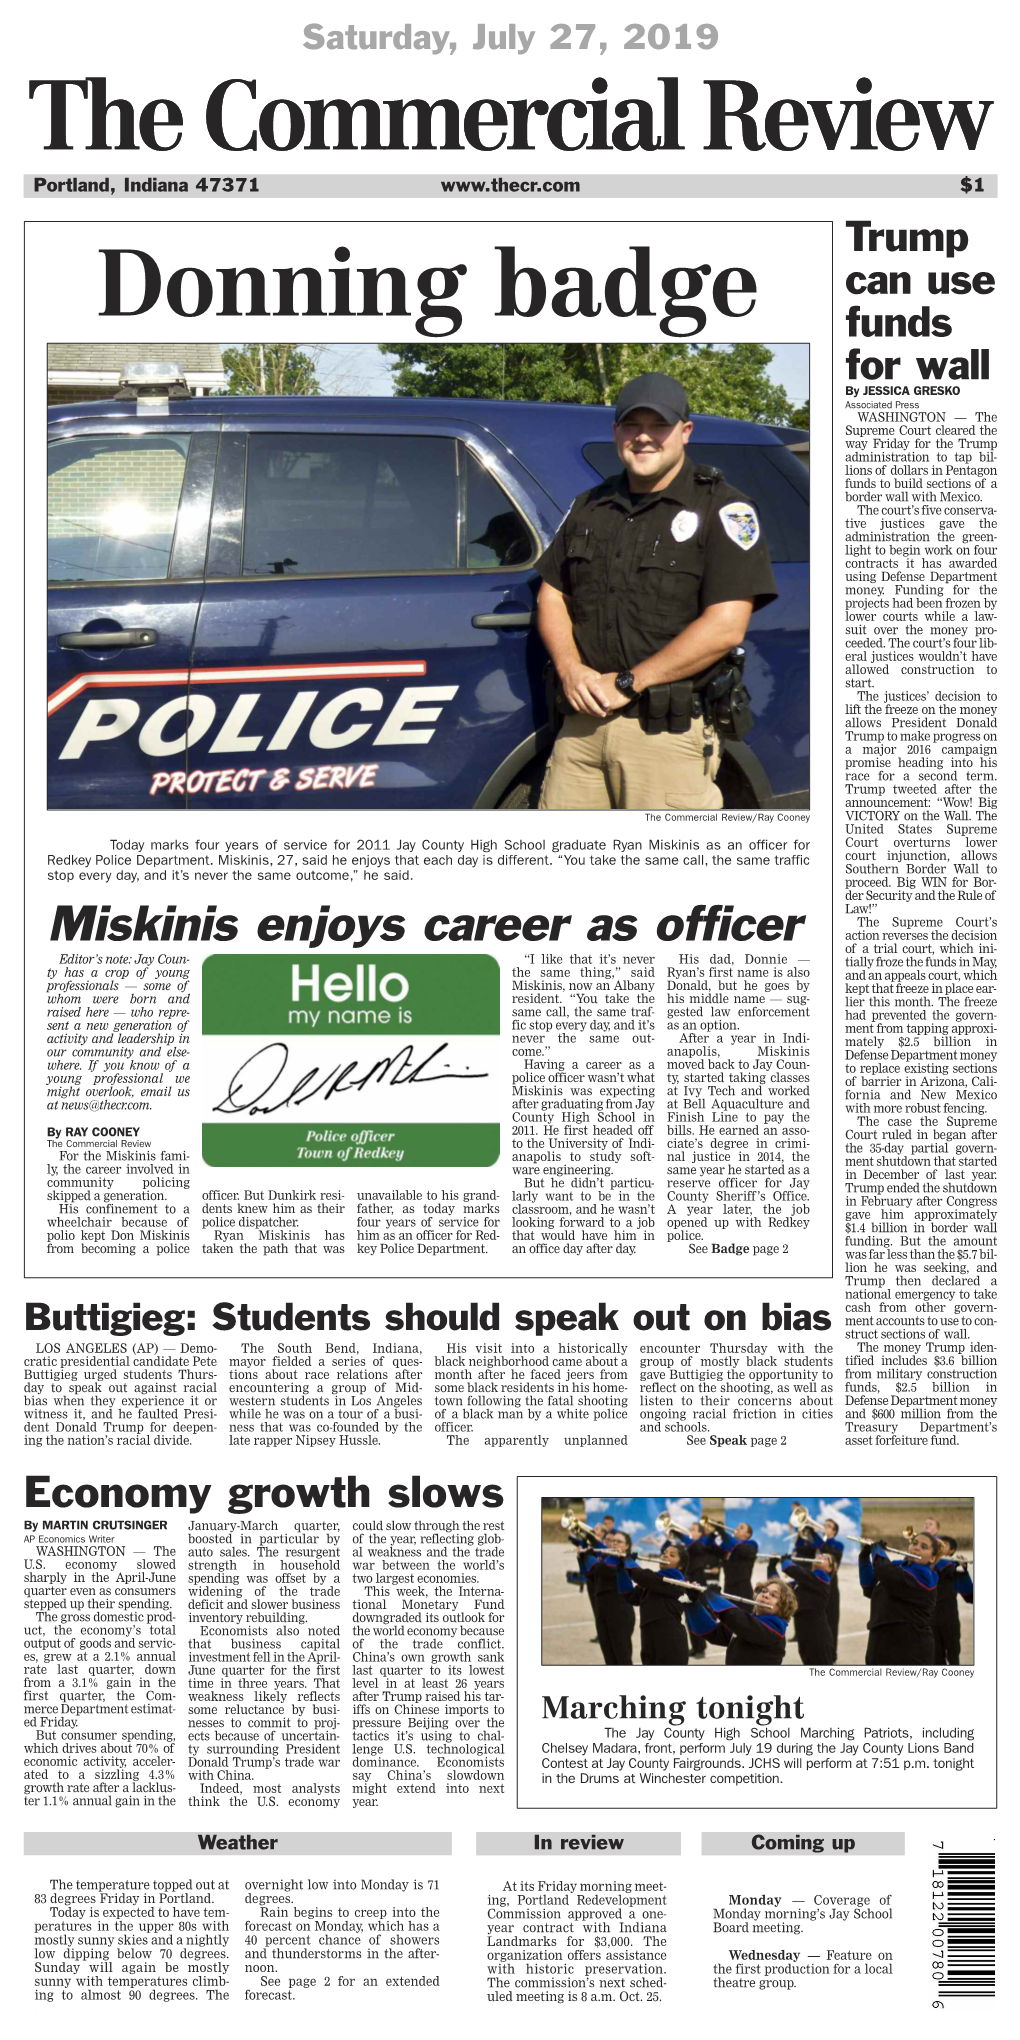 Miskinis Enjoys Career As Officer